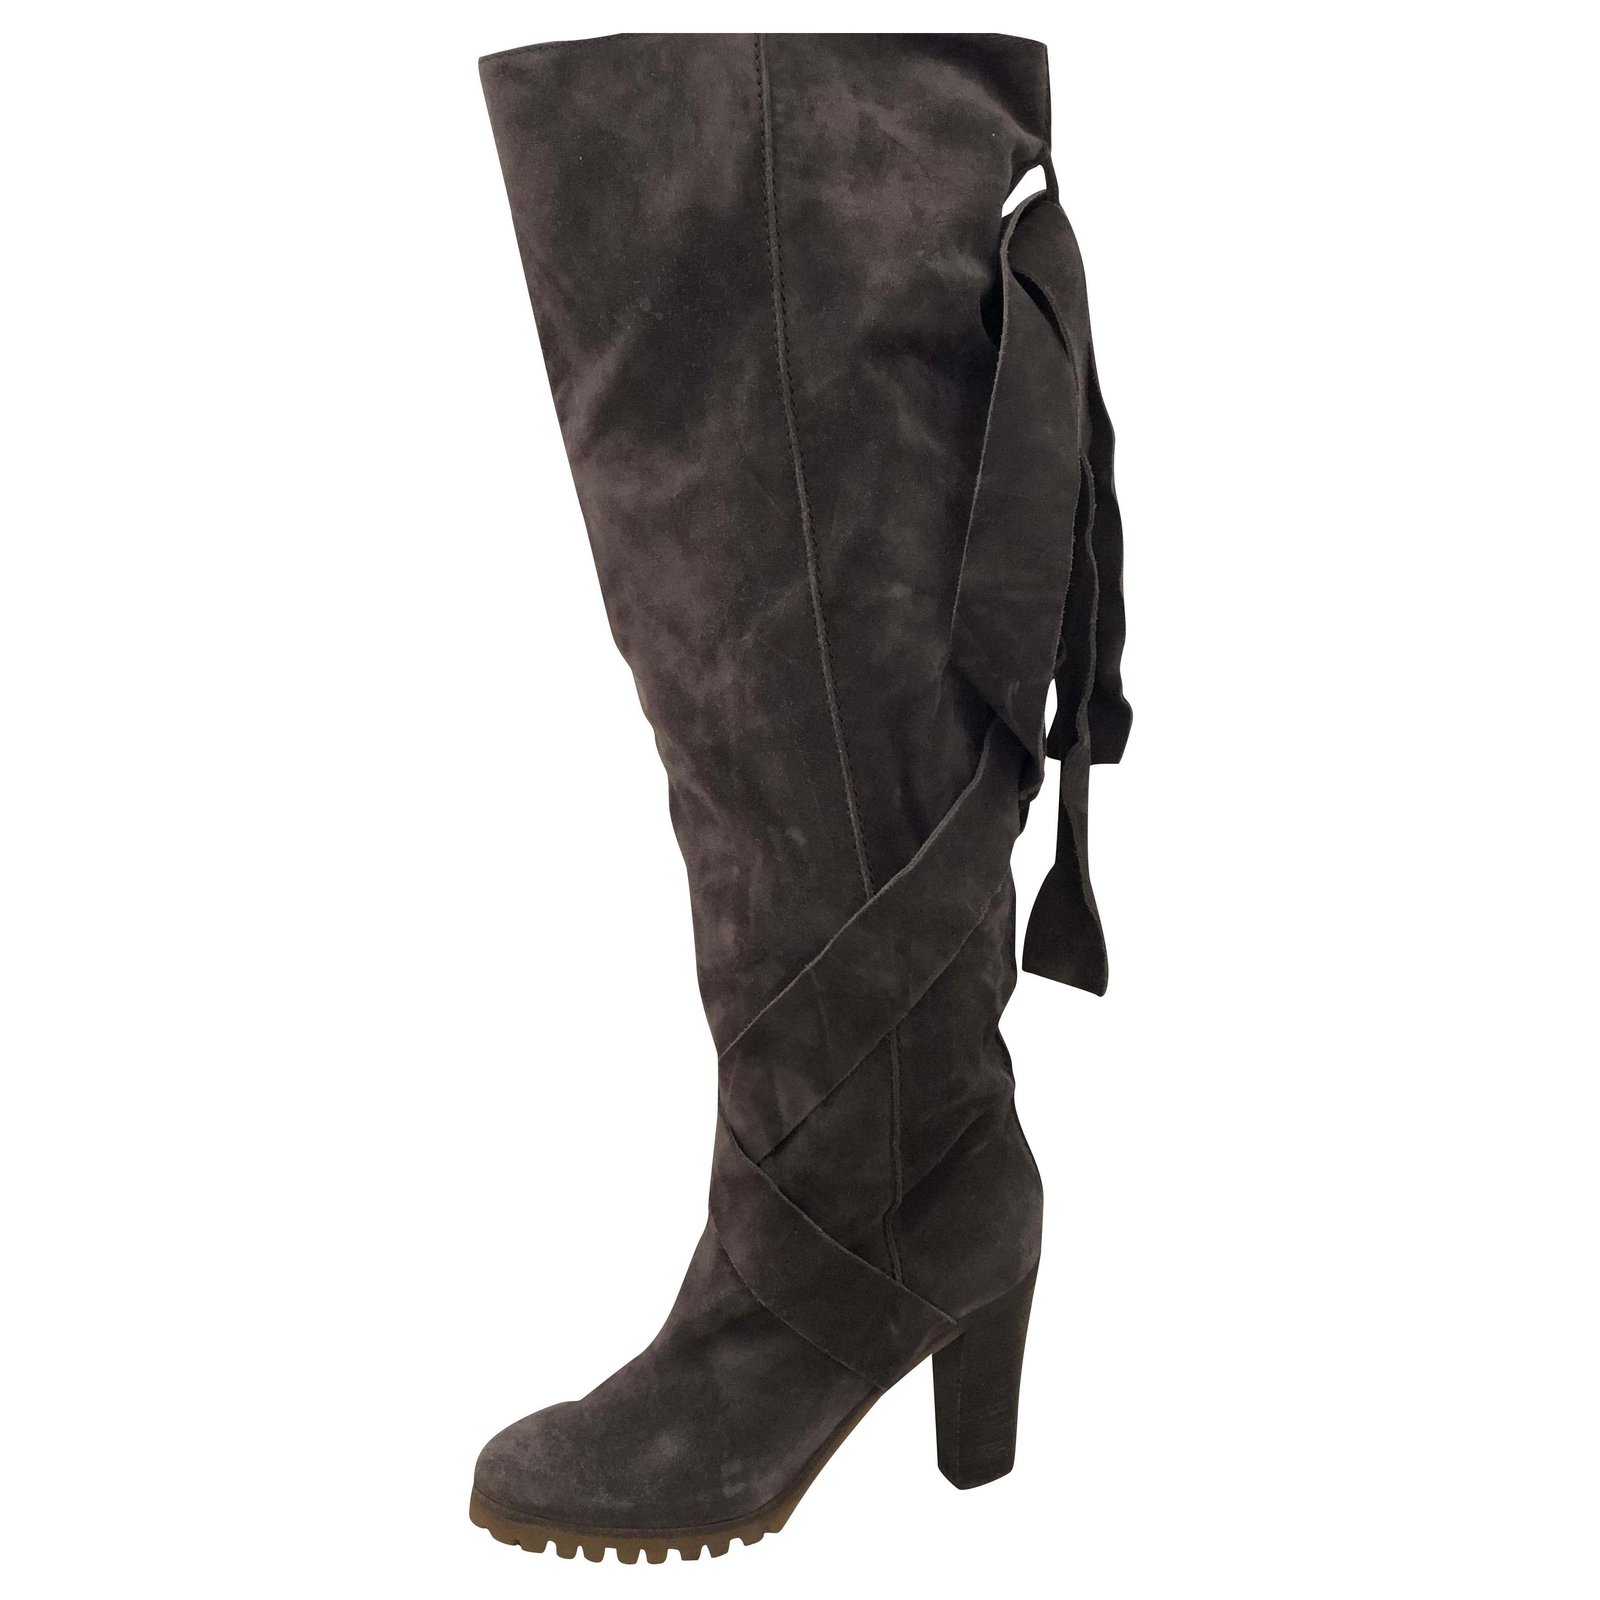 dark grey over knee boots